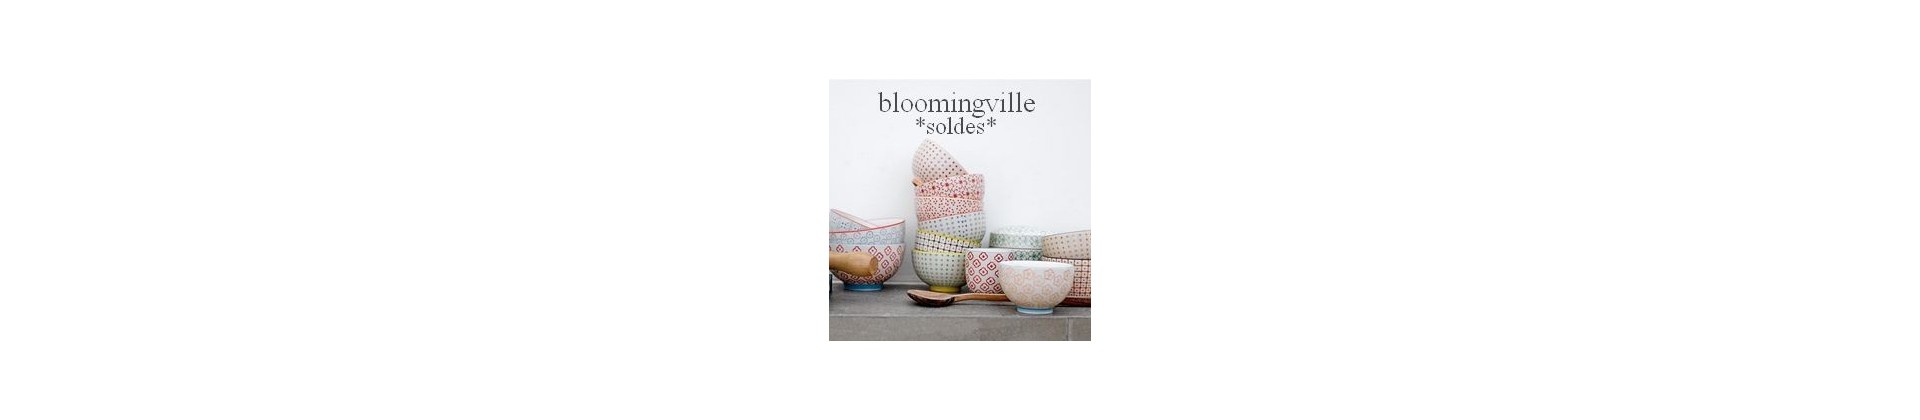 Bloomingville sale